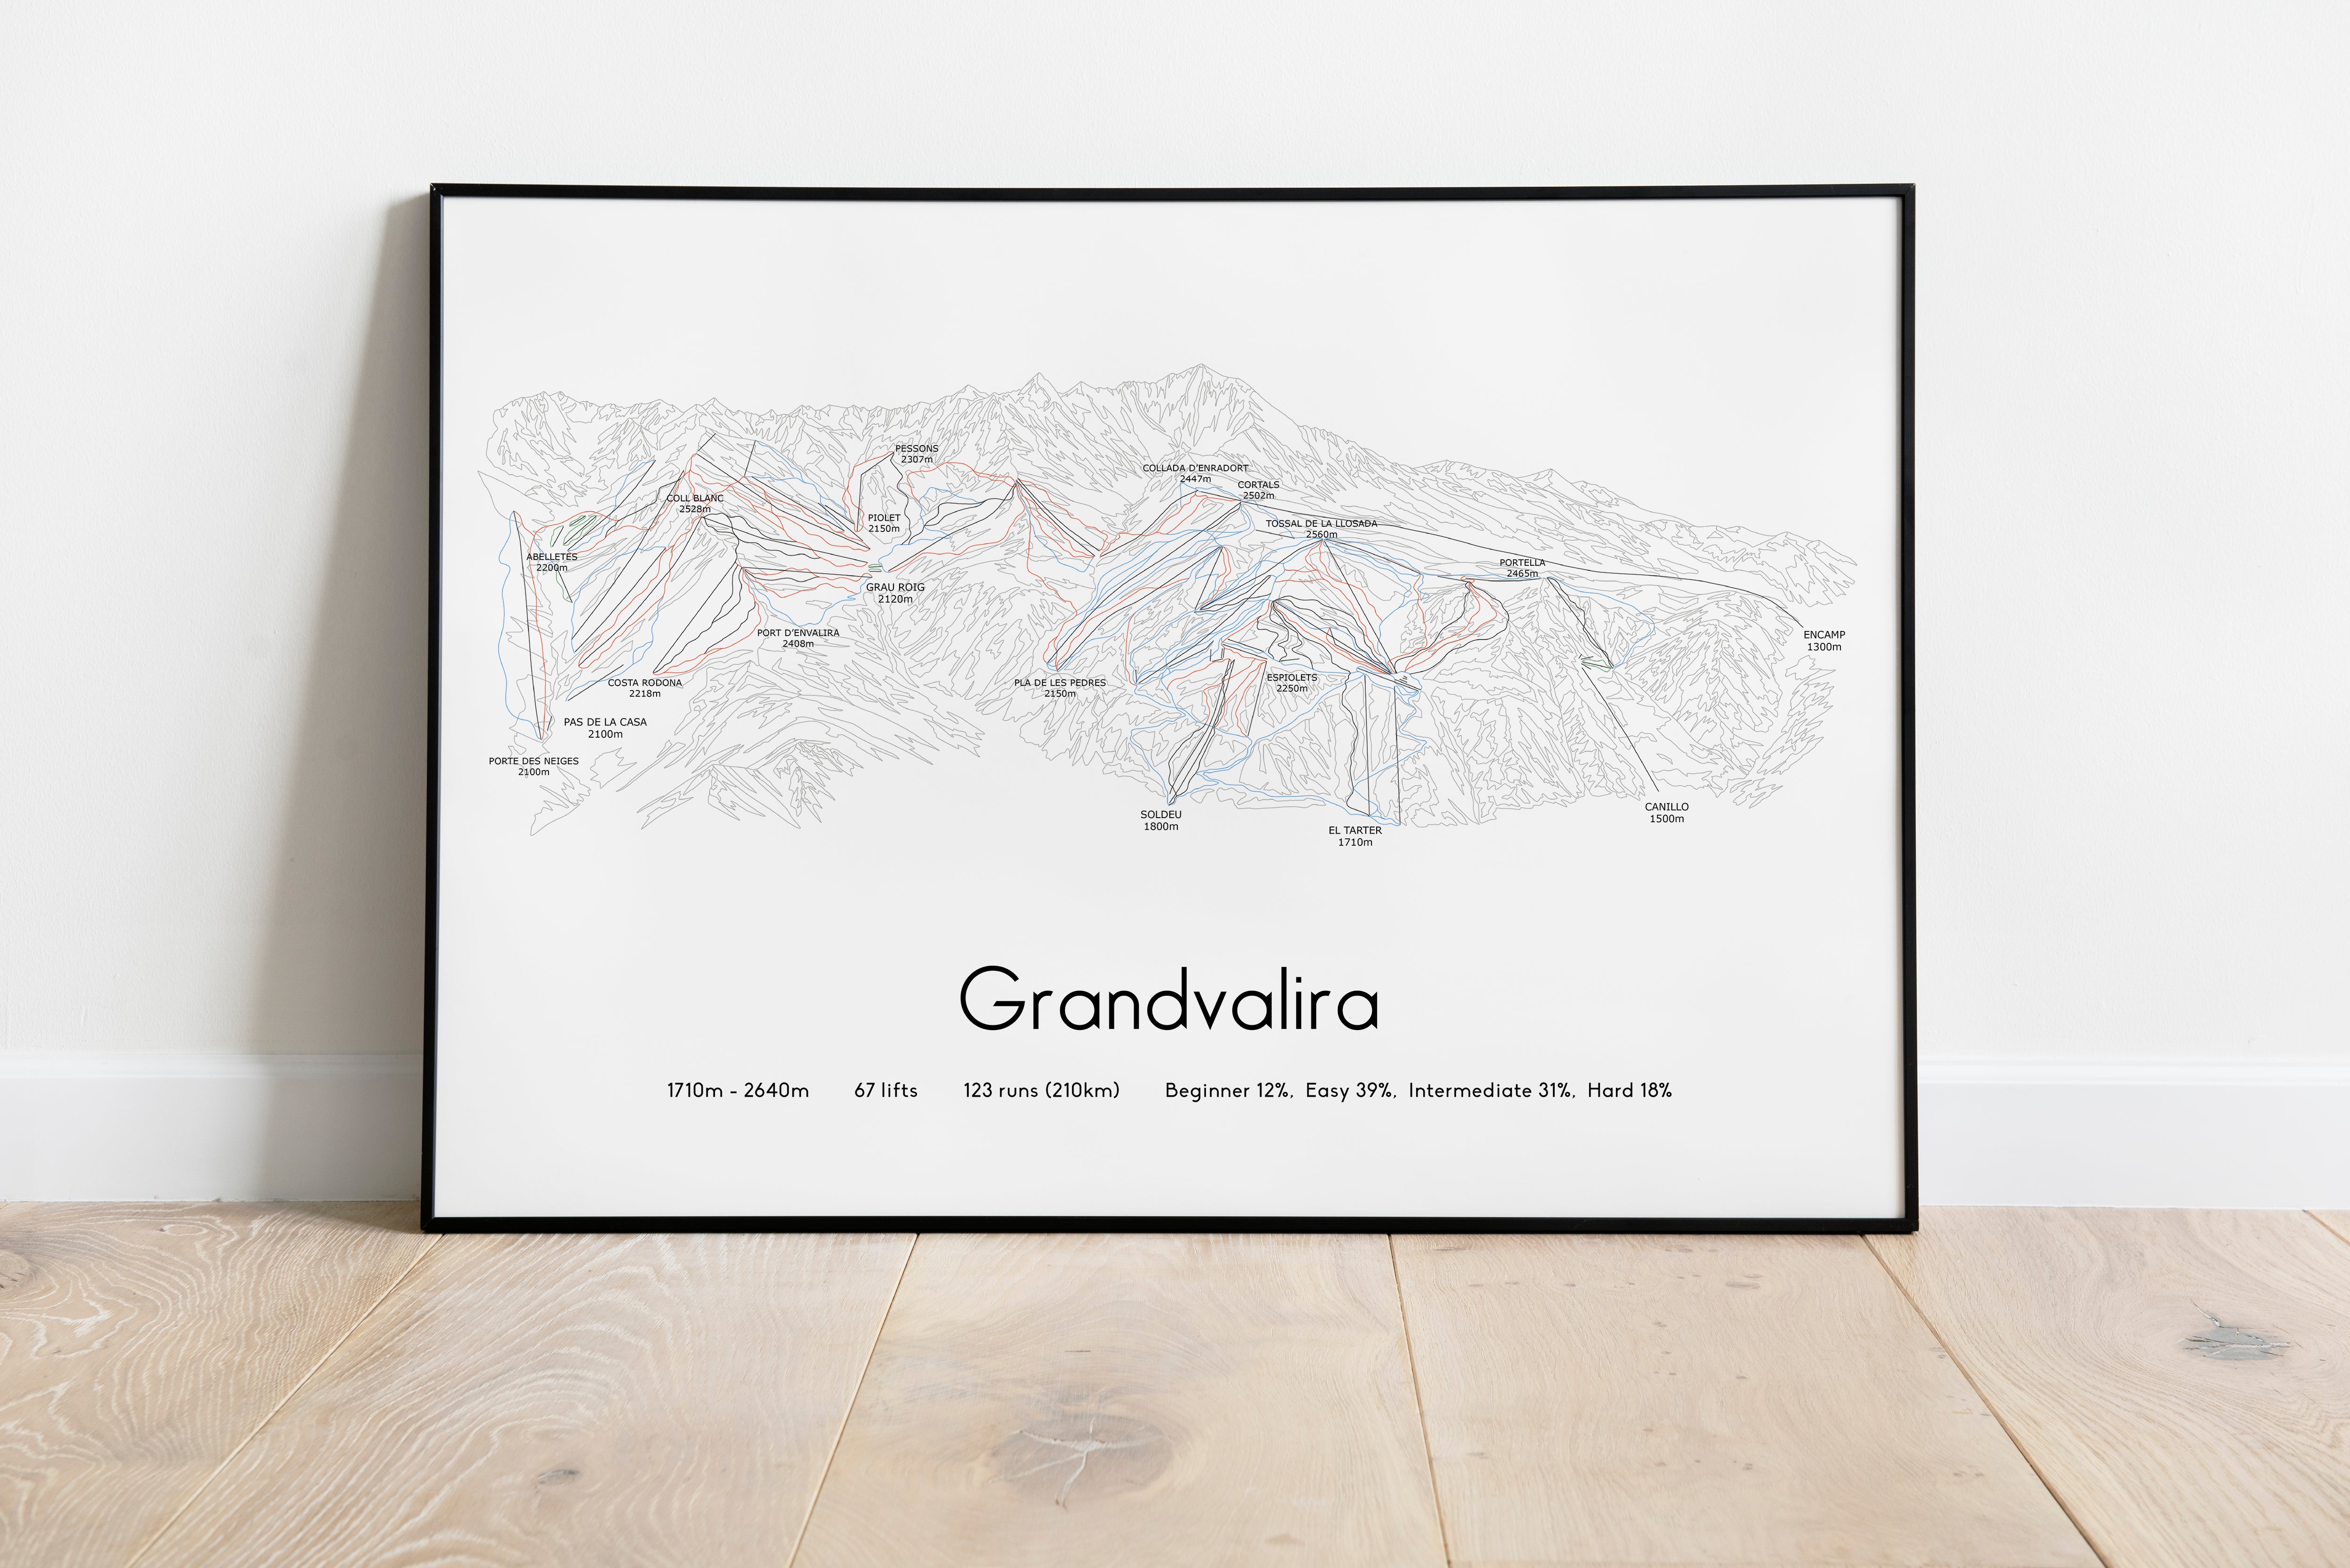 Grandvalira - Soldeu, Pas de la Casa, Andorra